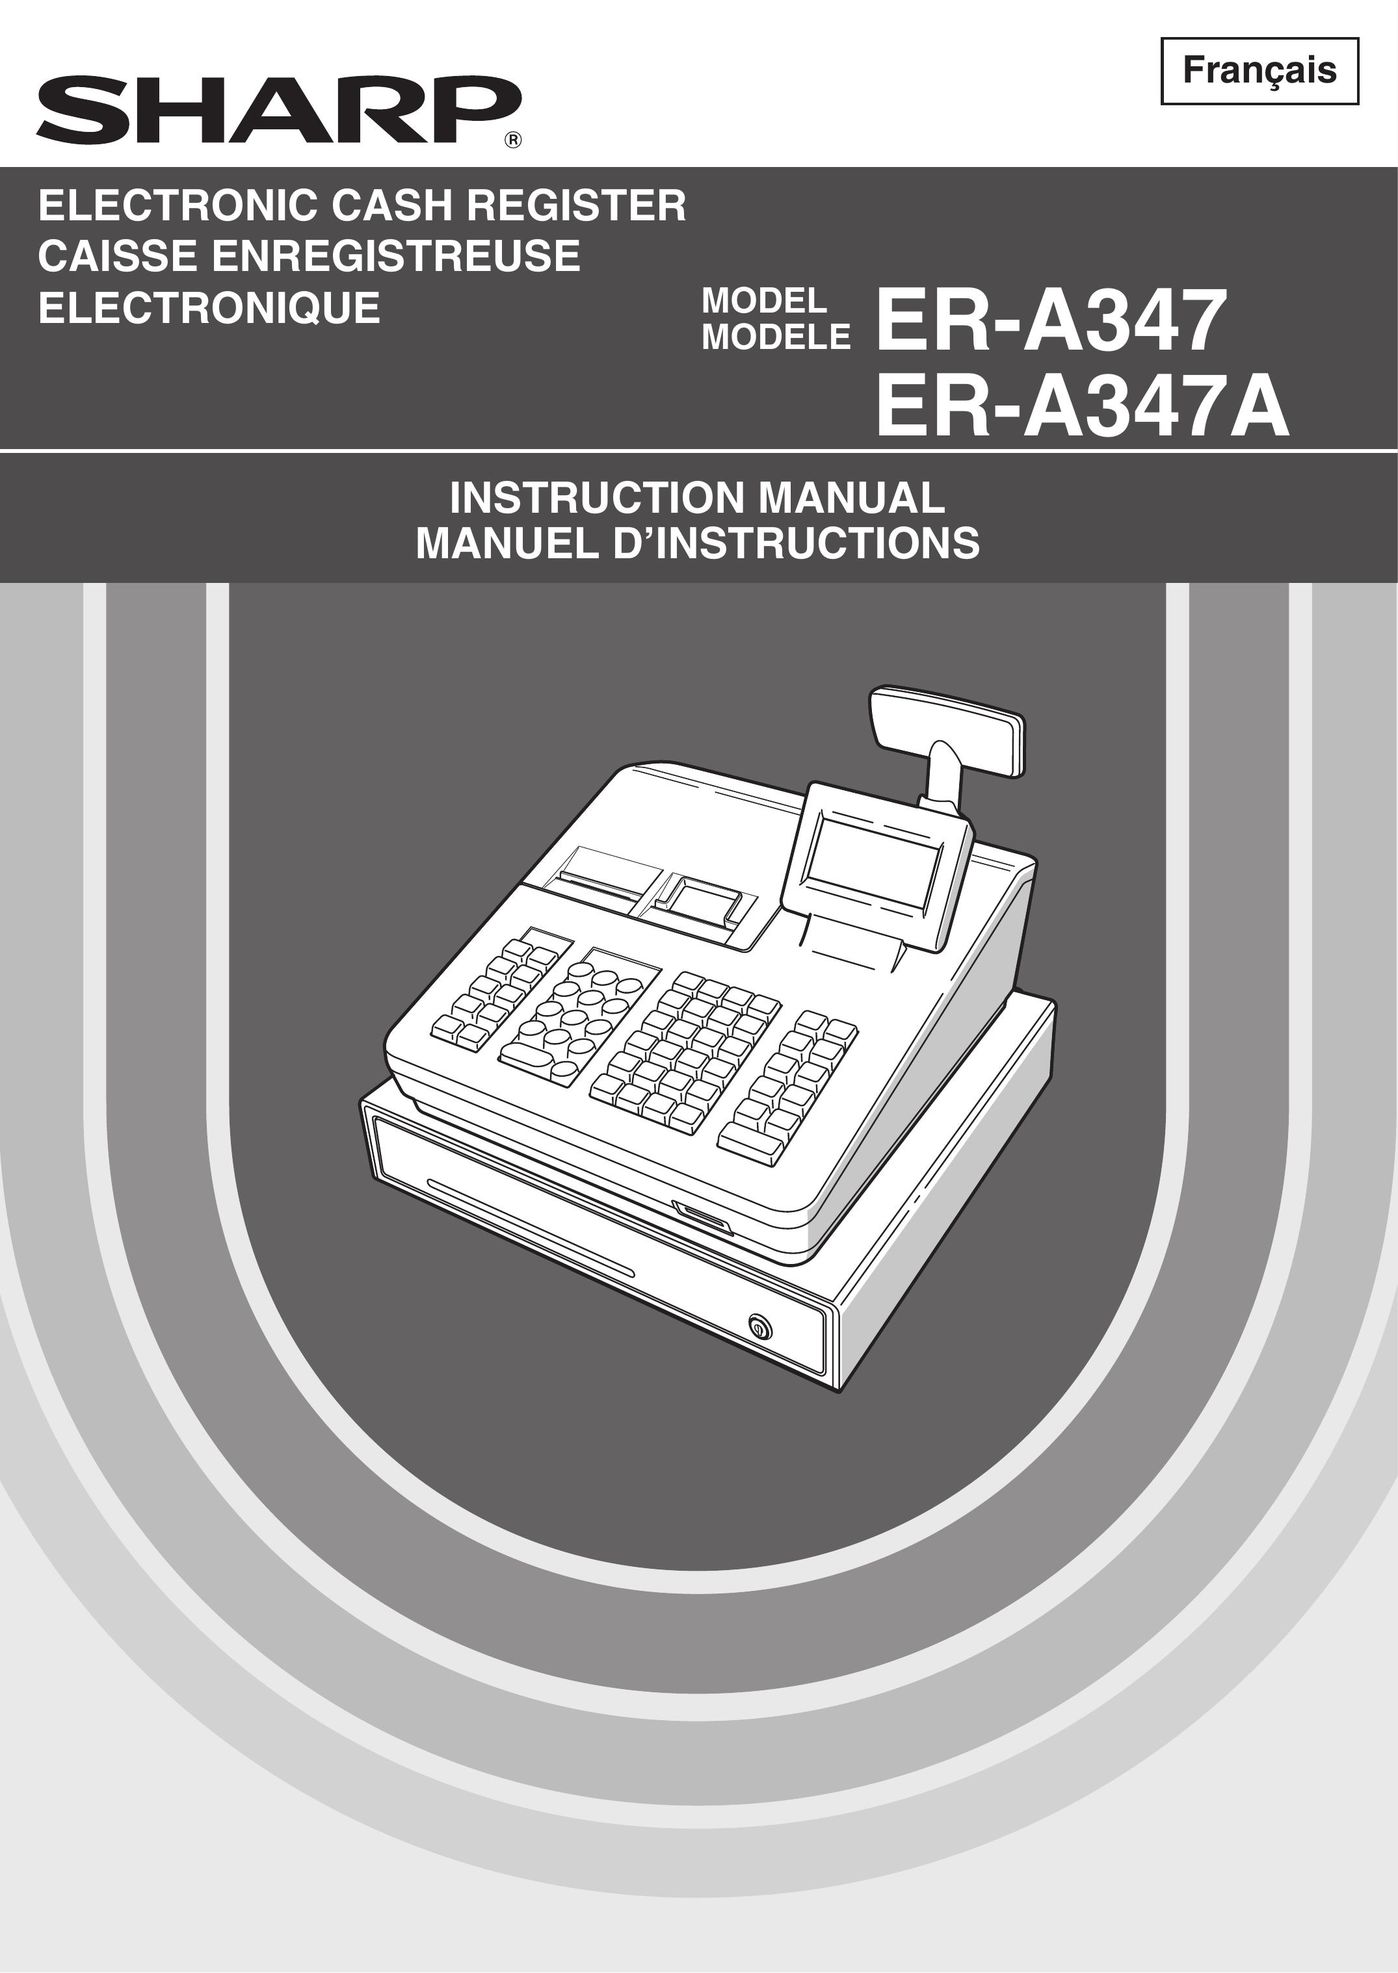 Sharp ER-A347 Cash Register User Manual